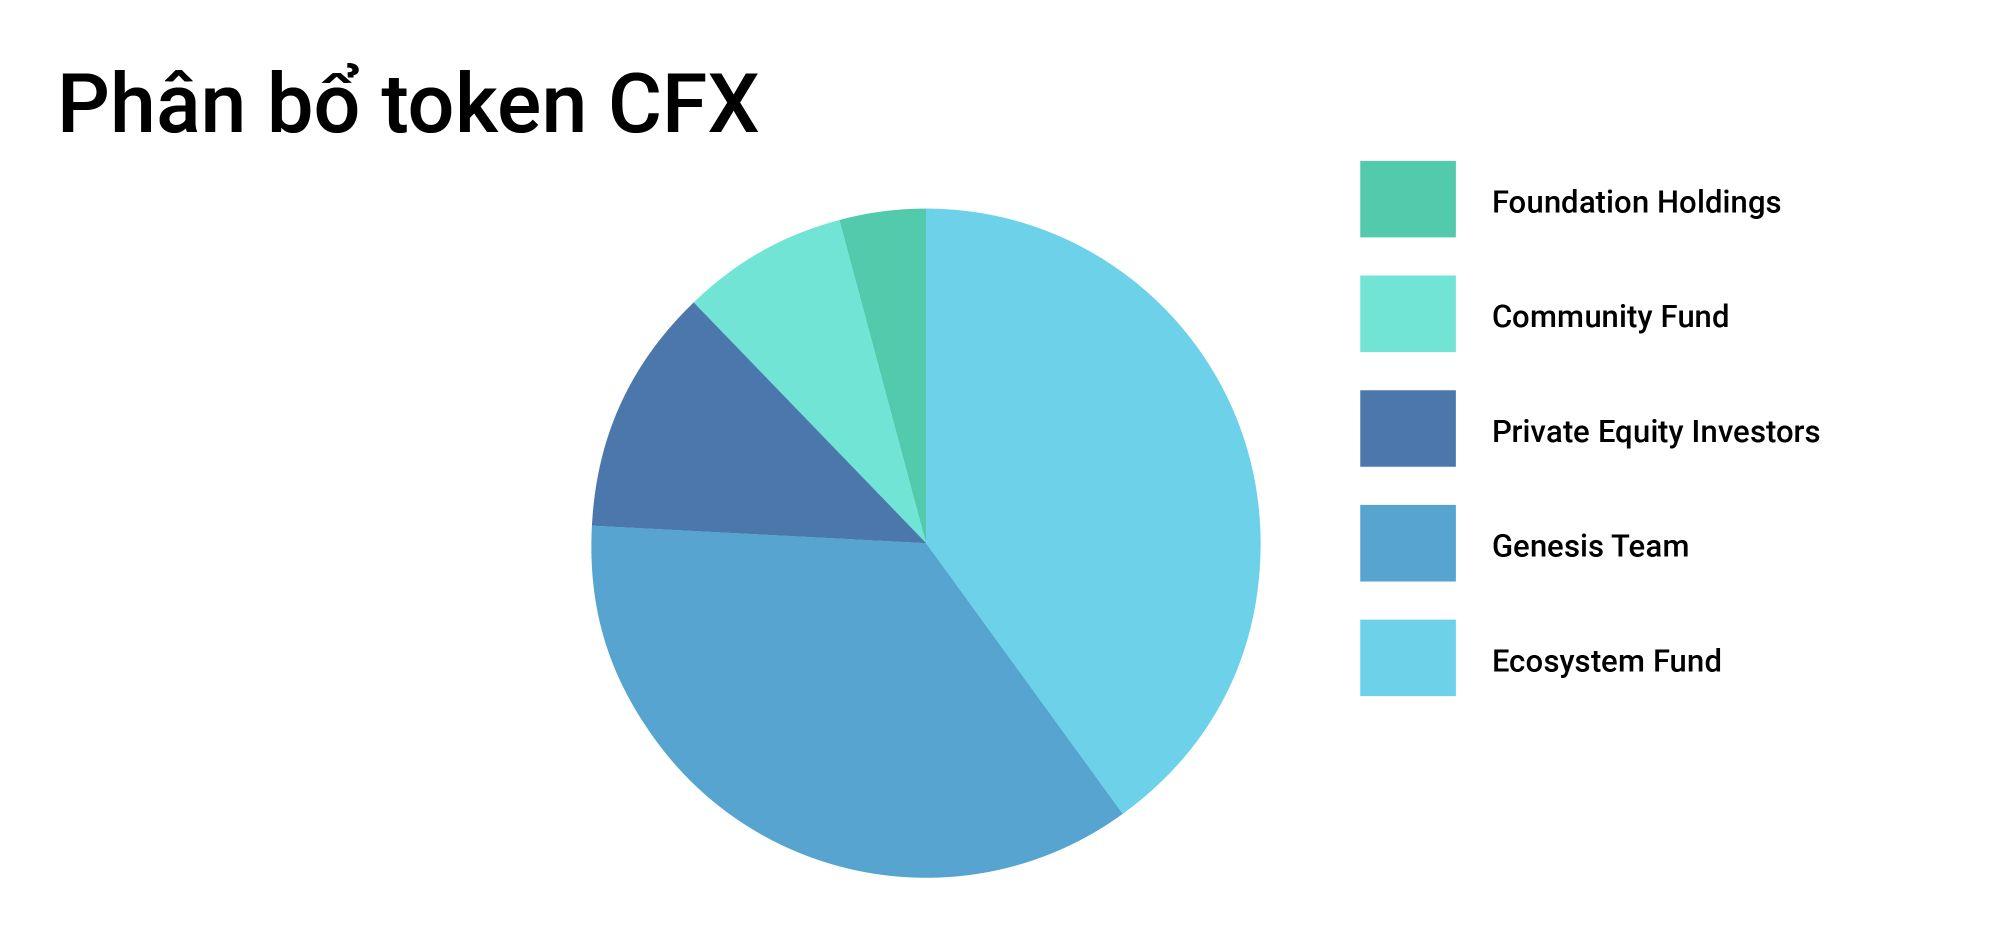 Phân bổ token CFX